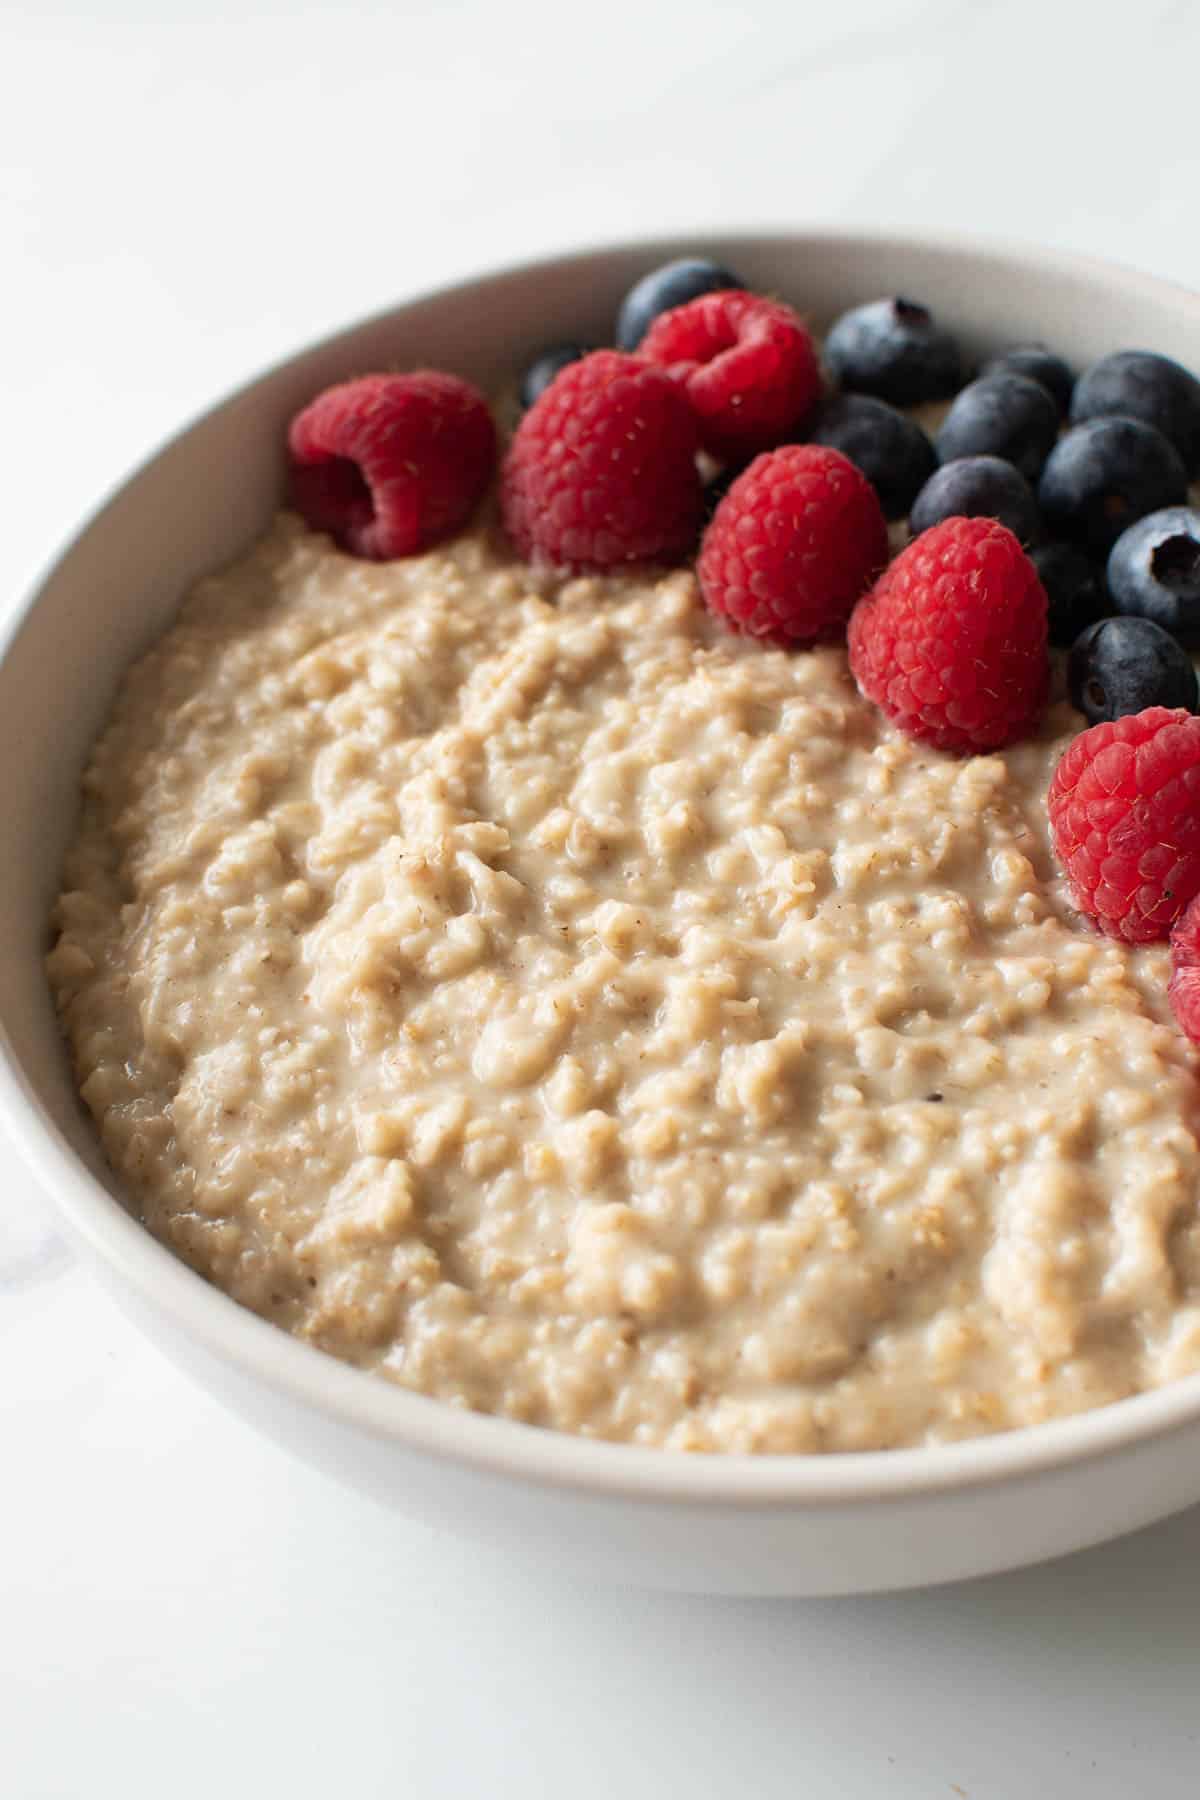 Breakfast porridge with berries on top.